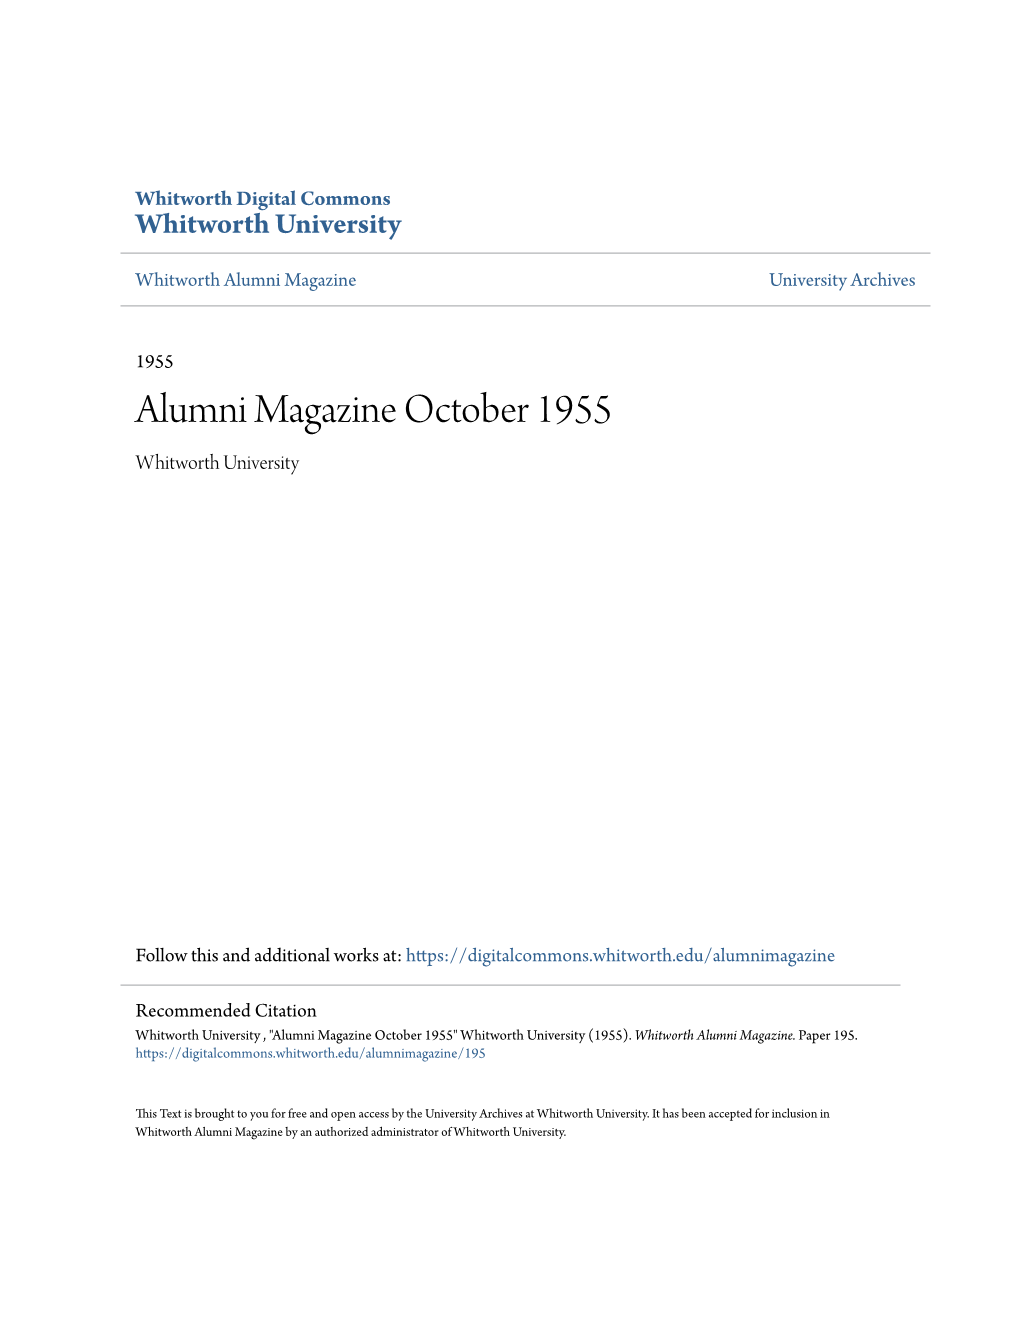 Alumni Magazine October 1955 Whitworth University